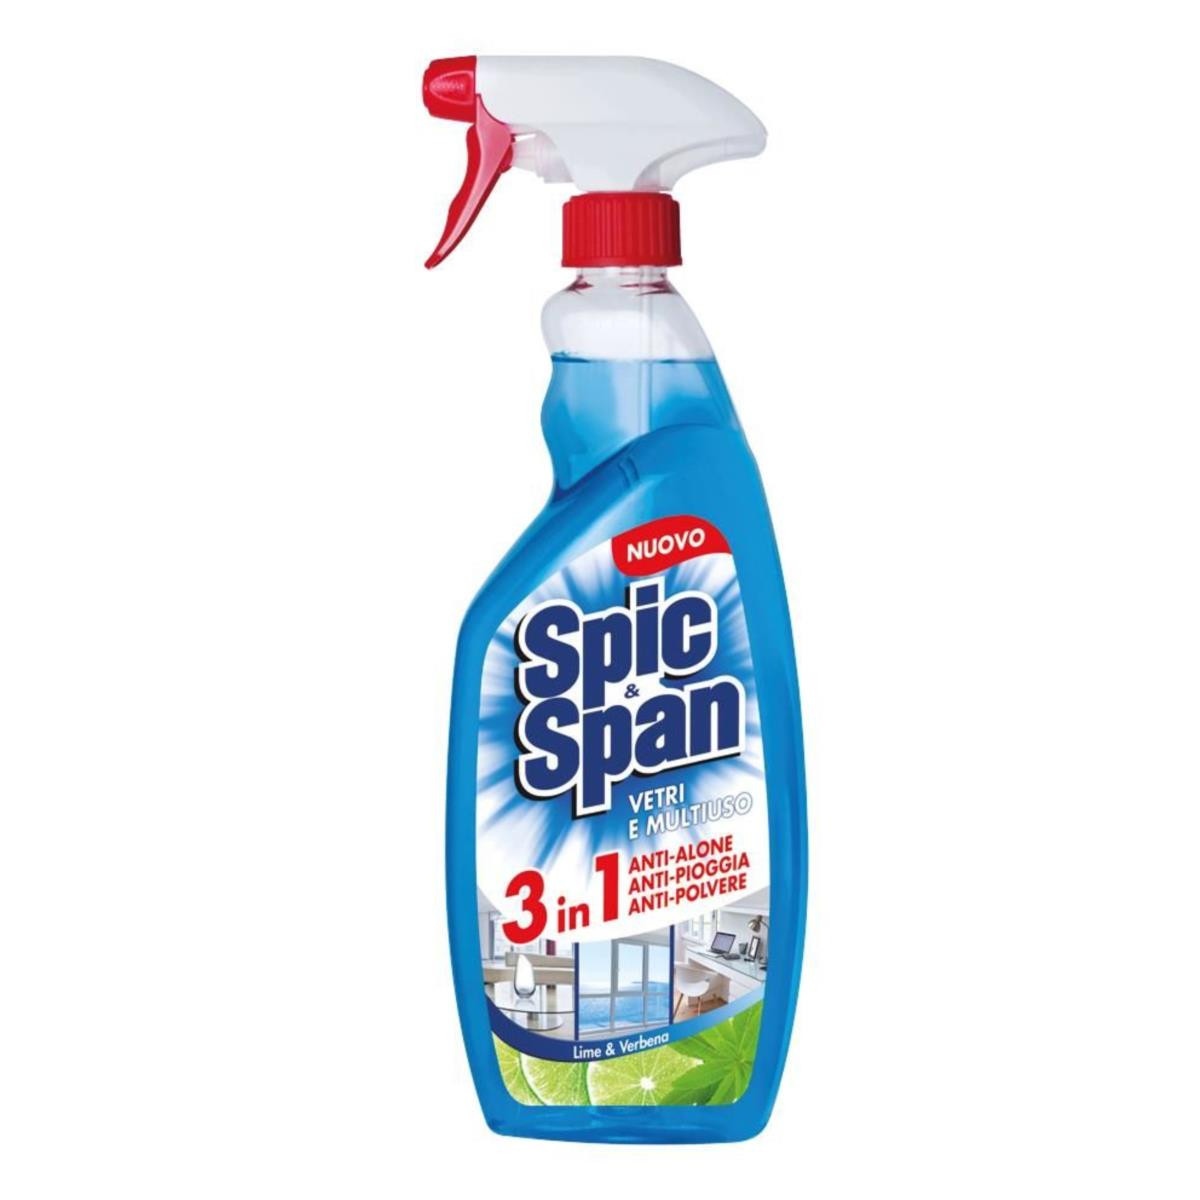 SPIC&SPAN Detergente Vetri e Multiuso 3in1 750ml